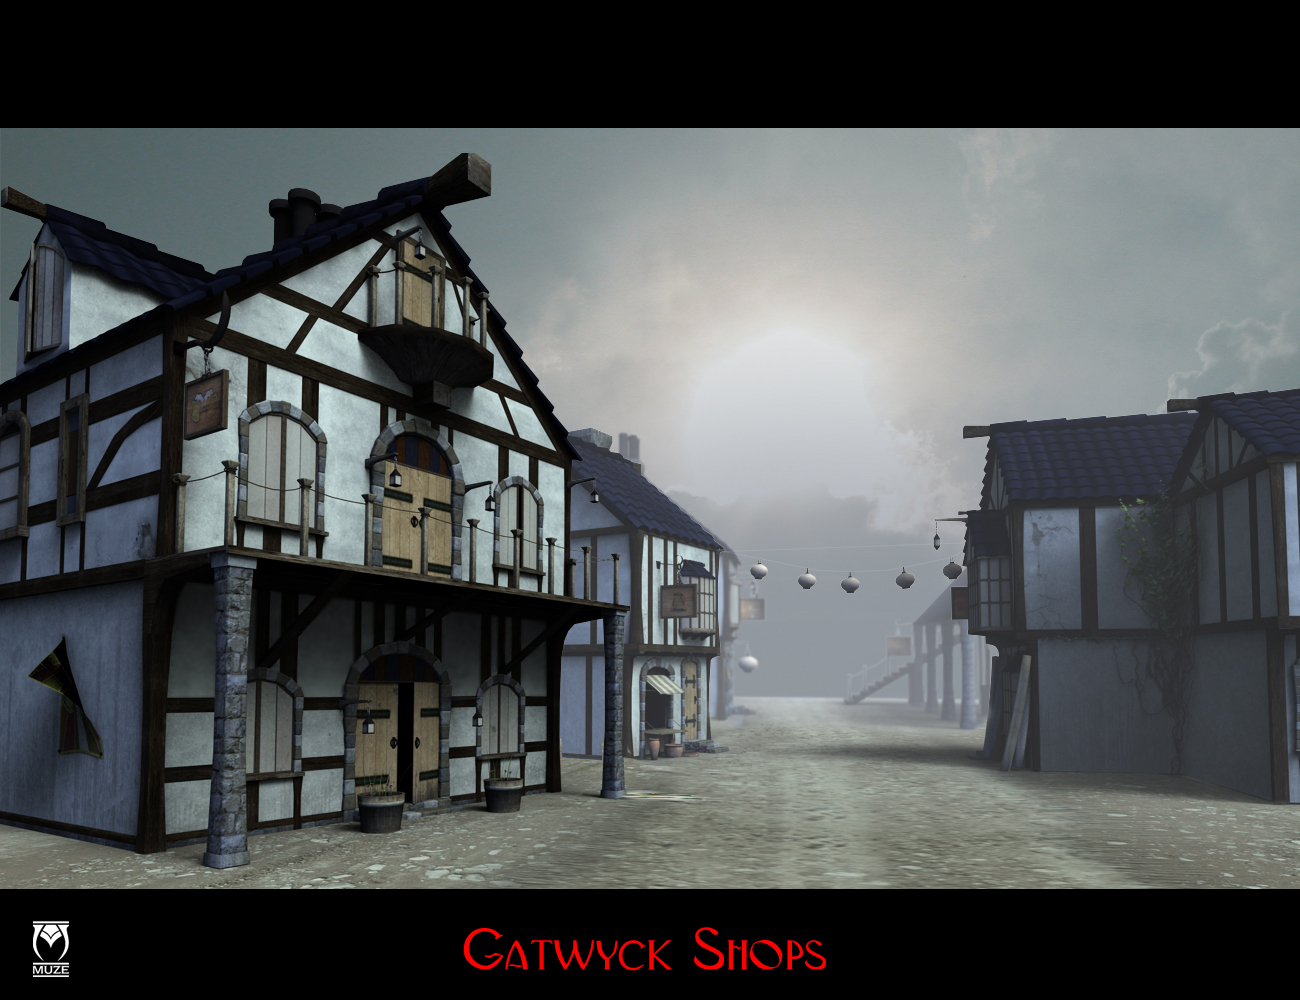 Gatwyck Shops by: Muze, 3D Models by Daz 3D